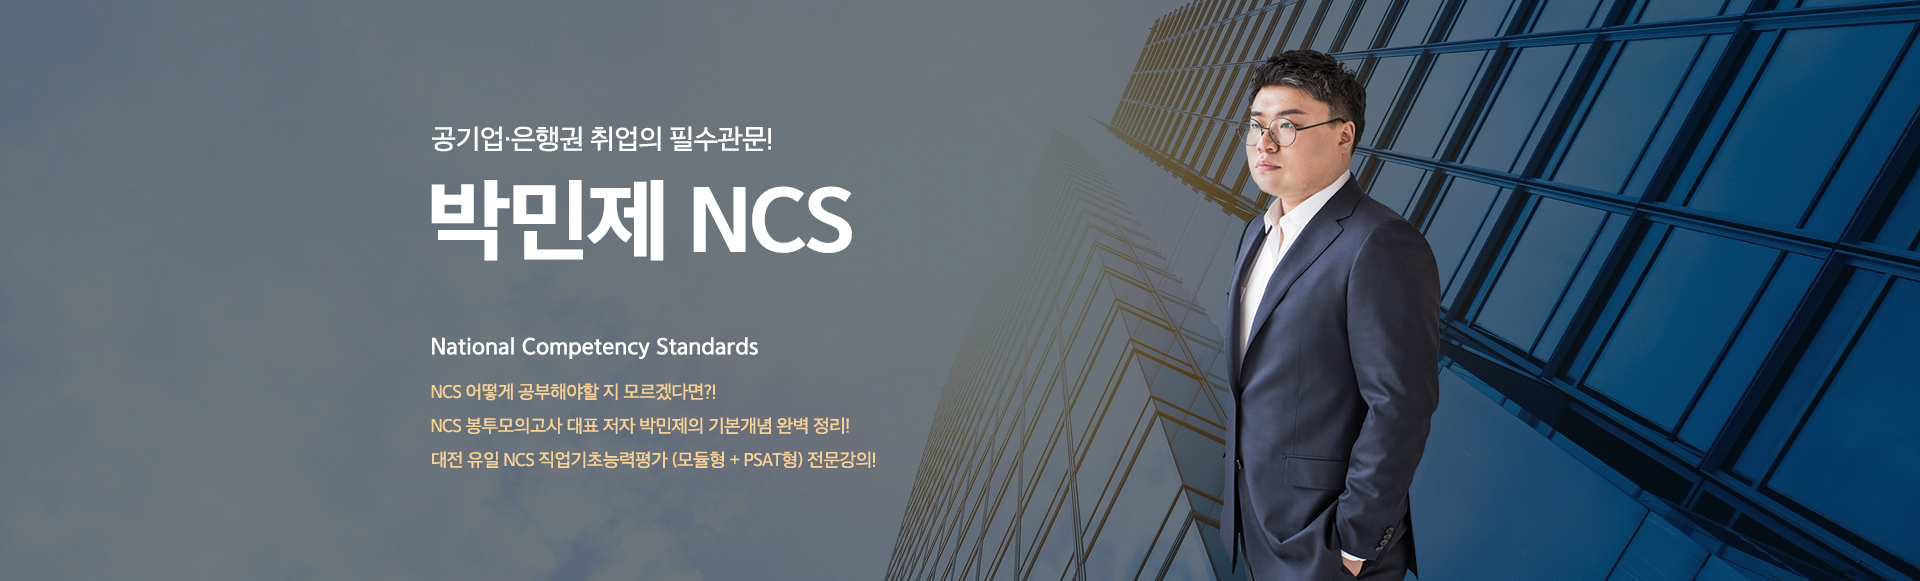 공기업·은행권 취업의 필수관문! 초급자를 위한 기초반 신설! 박민제 NCS. National Competency Standards NCS를 처음 접하는 초급자를 위한 기초반(8주) 신설! (모듈형 + PSAT형) NCS 봉투모의고사 대표 저자